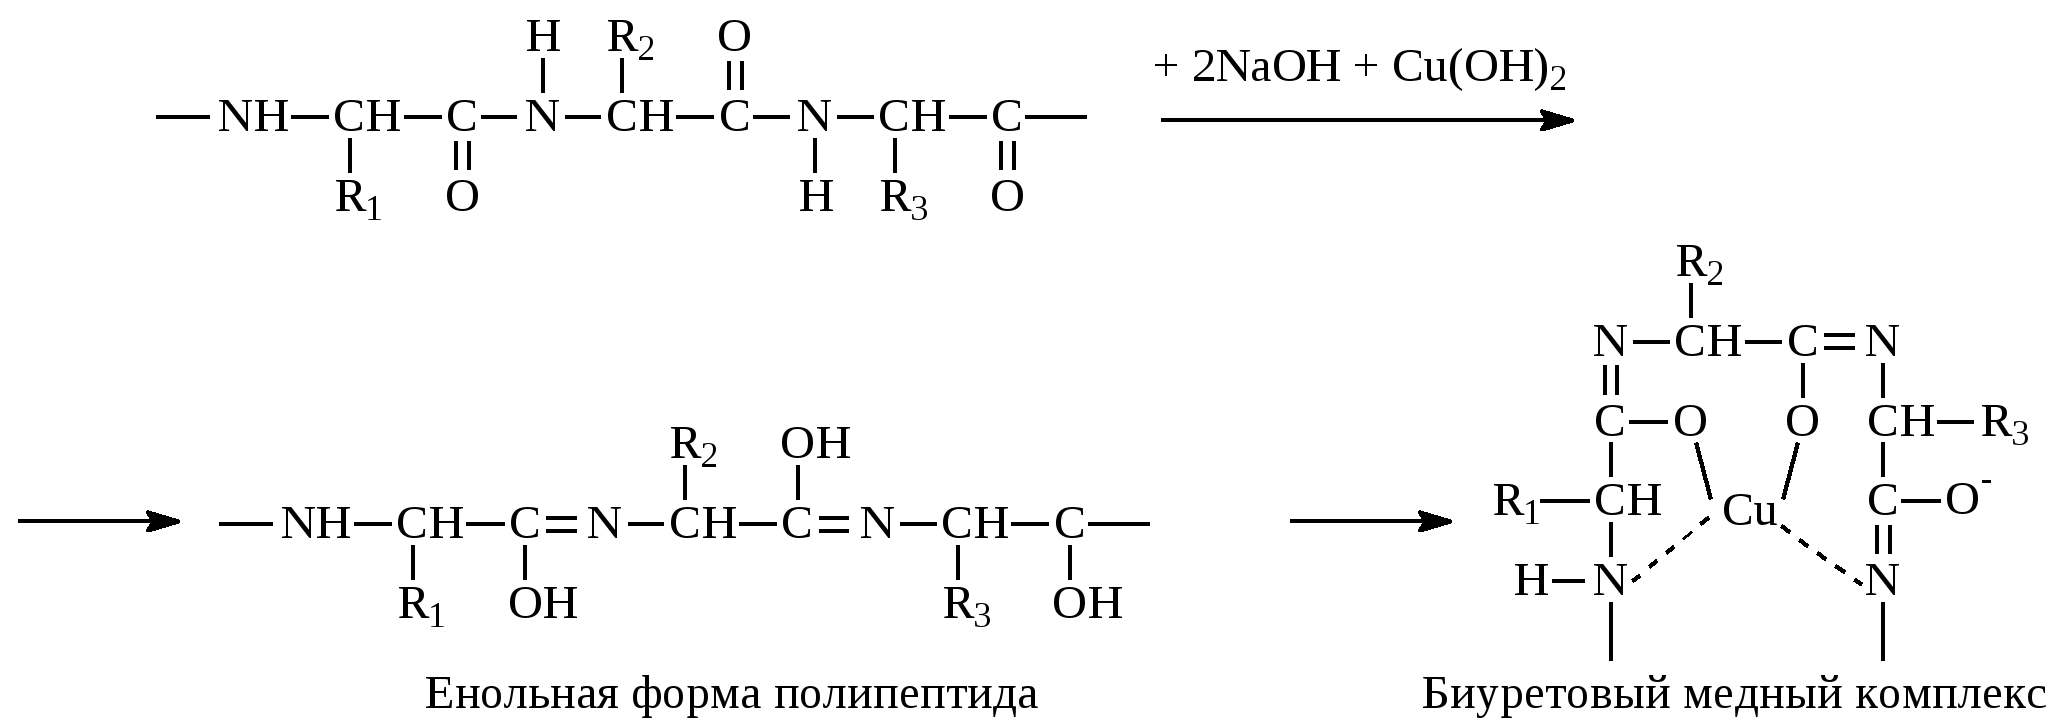 Формы полипептидов. Енольная форма. Реакция глицина с формальдегидом. Глицин и формальдегид.